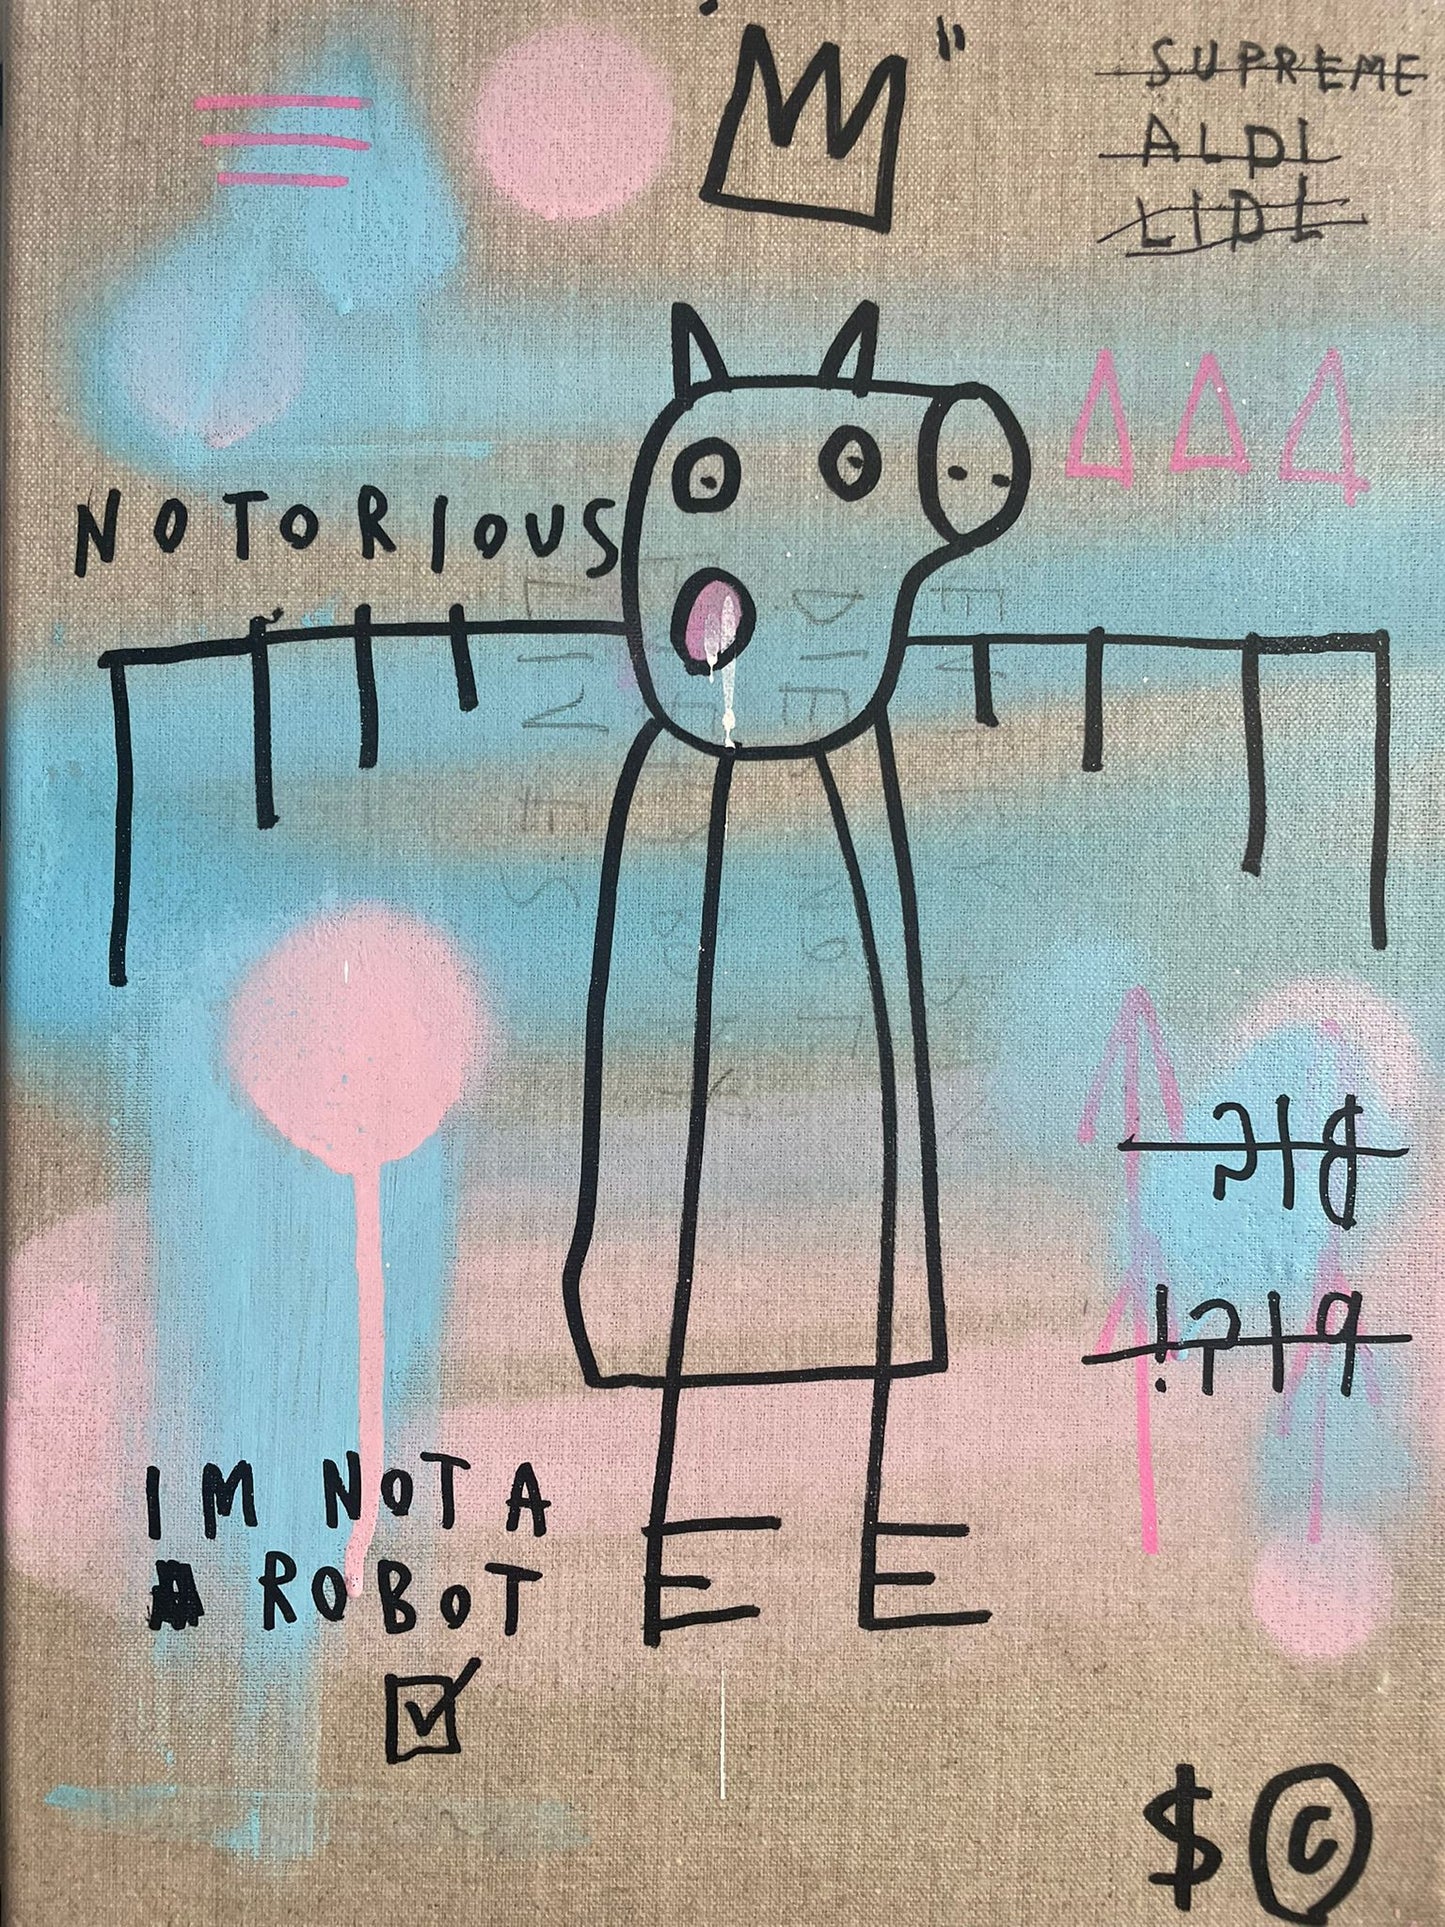 NOTORIOUS PIG/I AM NOT A ROBOT